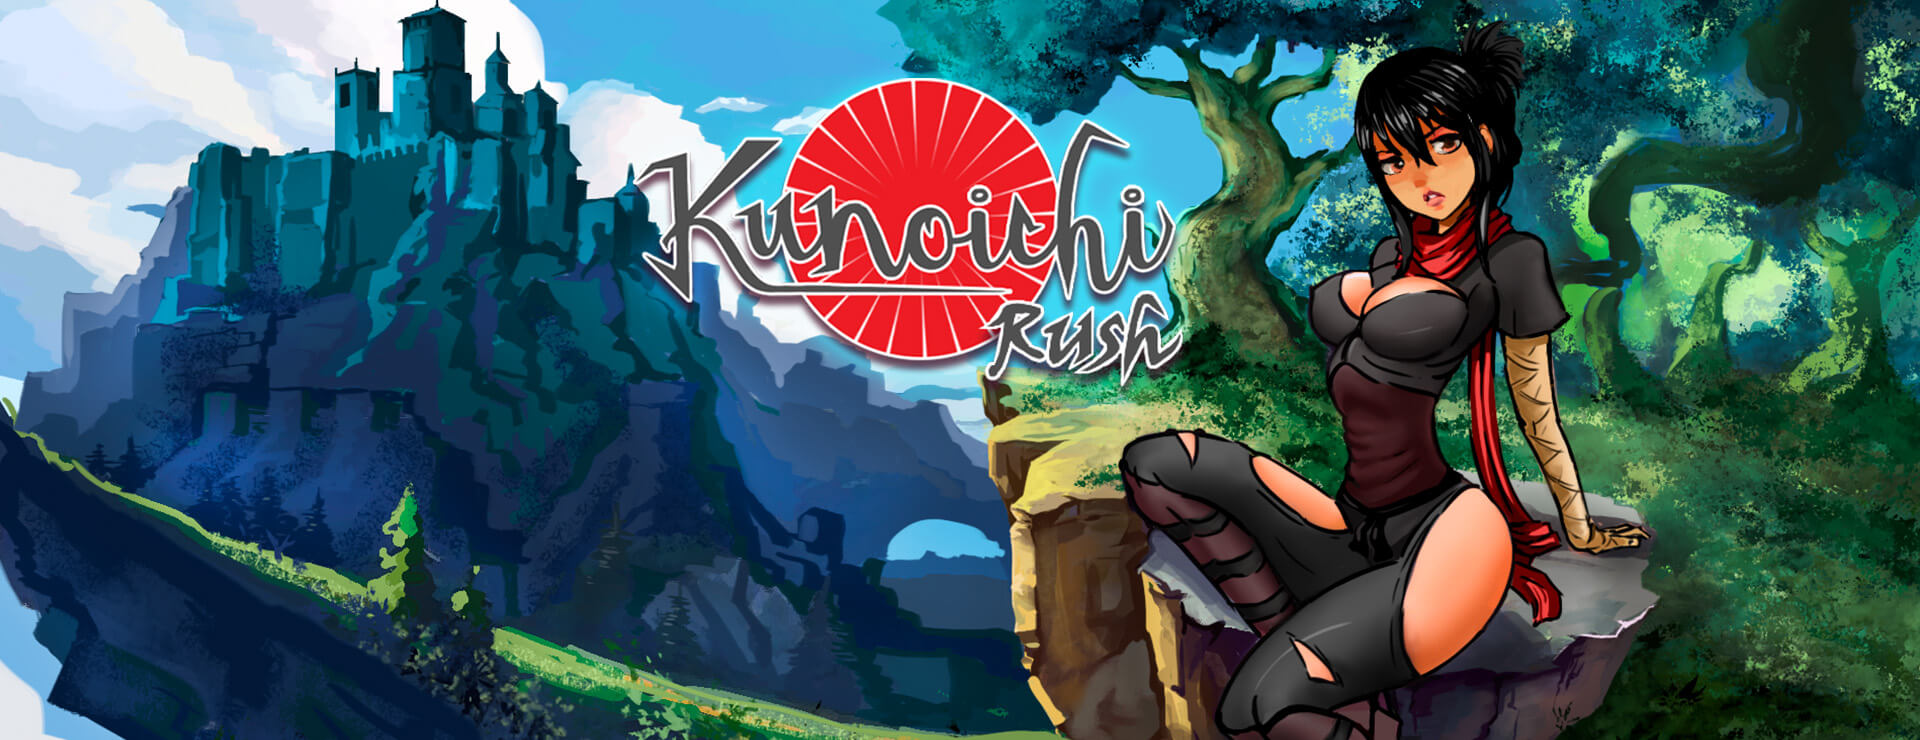 Kunoichi Rush - Action Adventure Game